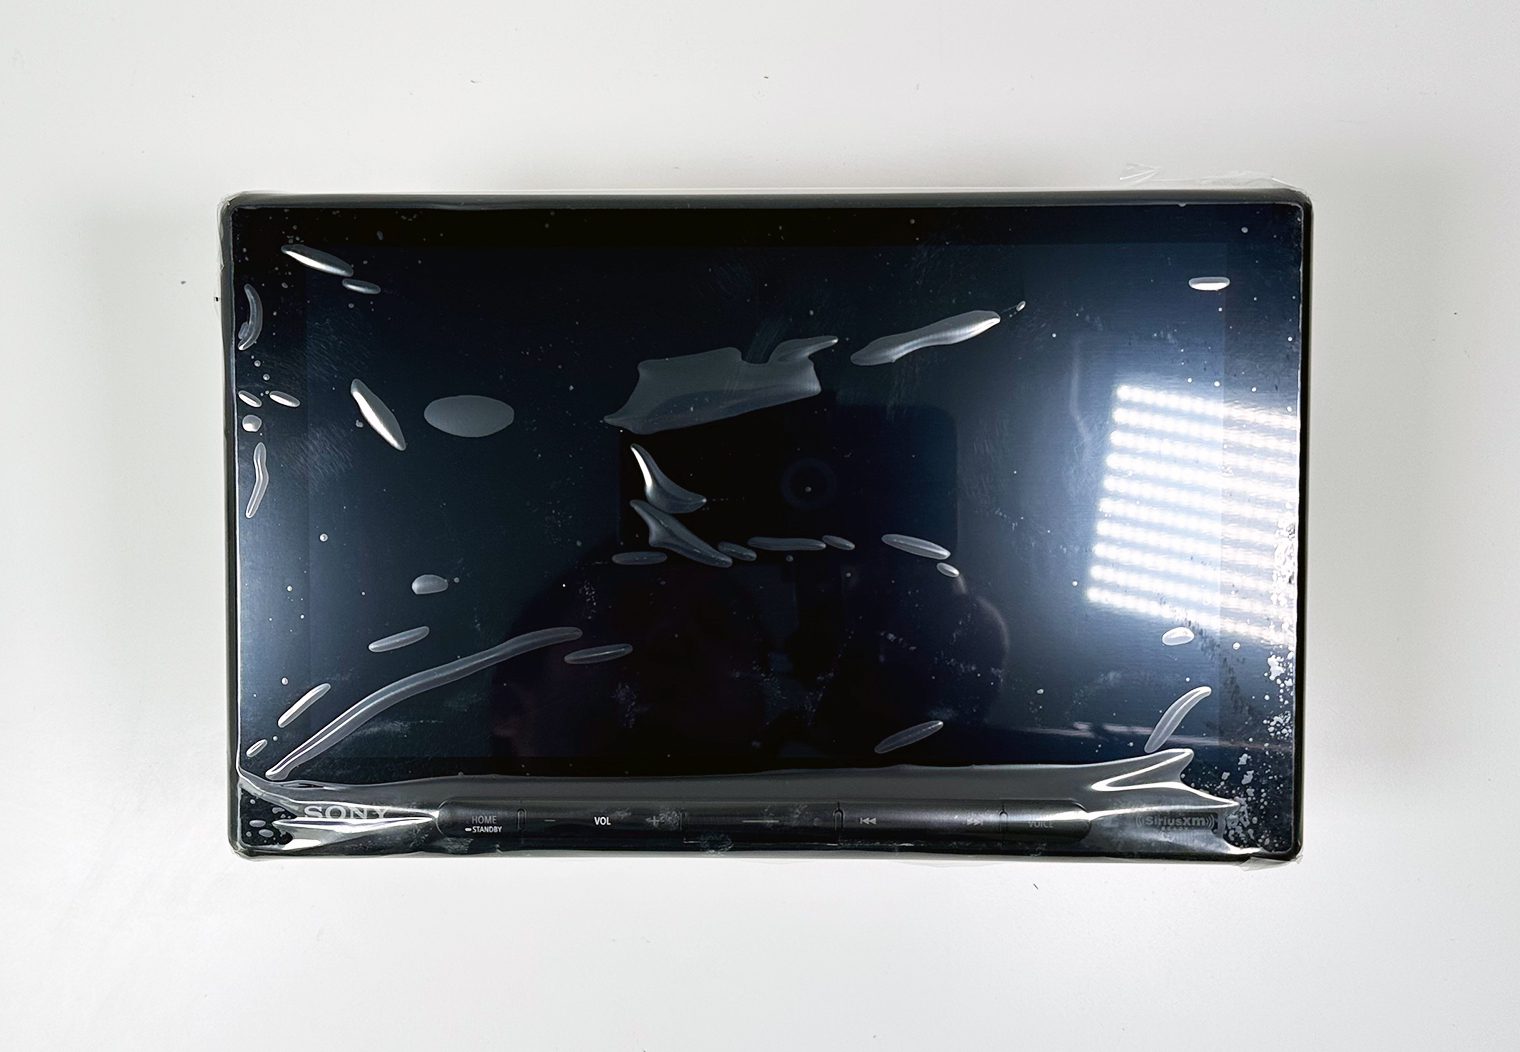 Sony XAV-AX8500 10.1" screen with protective film